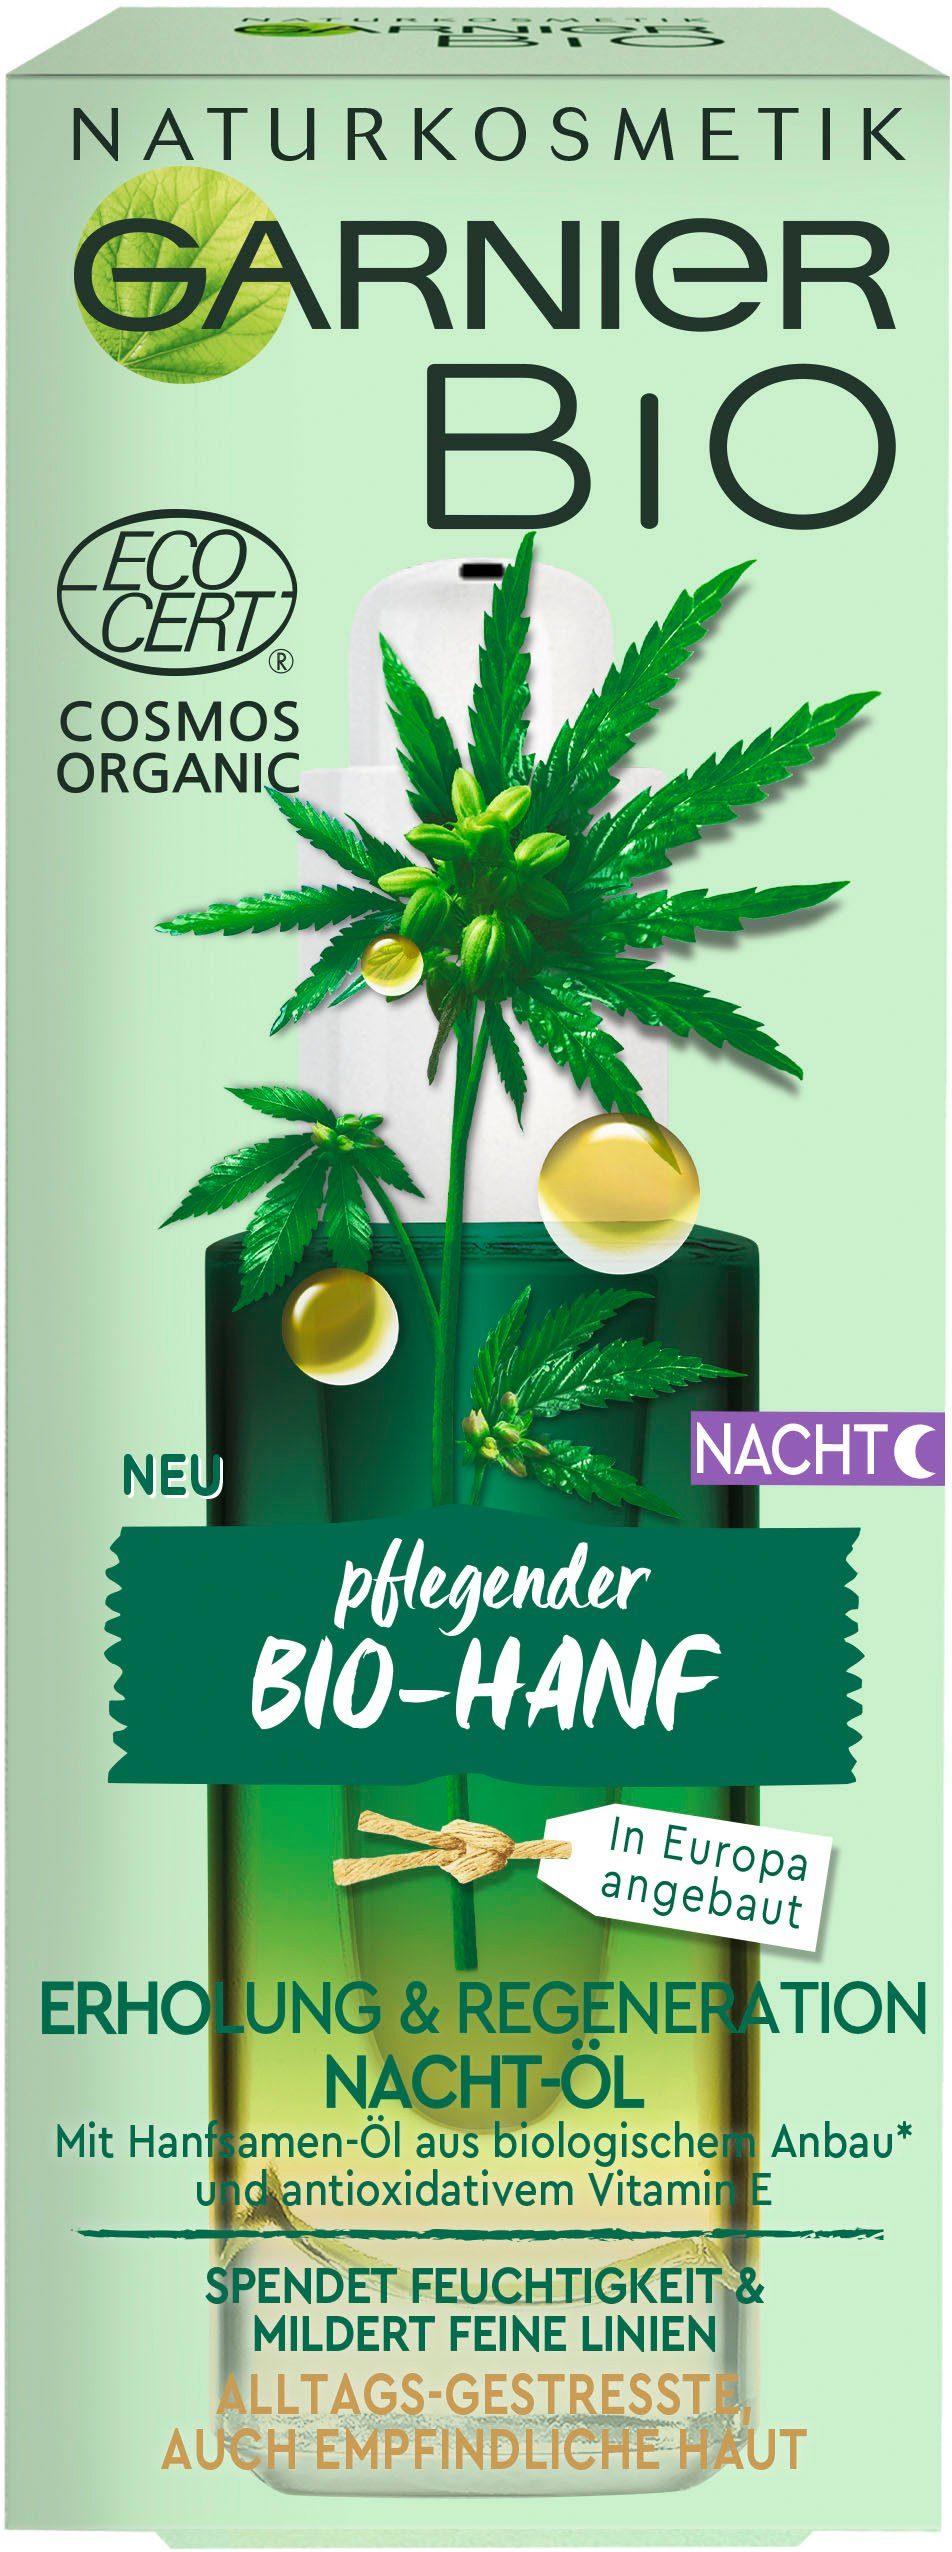 Regeneration Bio-Hanf Nacht-Öl, GARNIER Gesichtsöl & Naturkosmetik Erholung